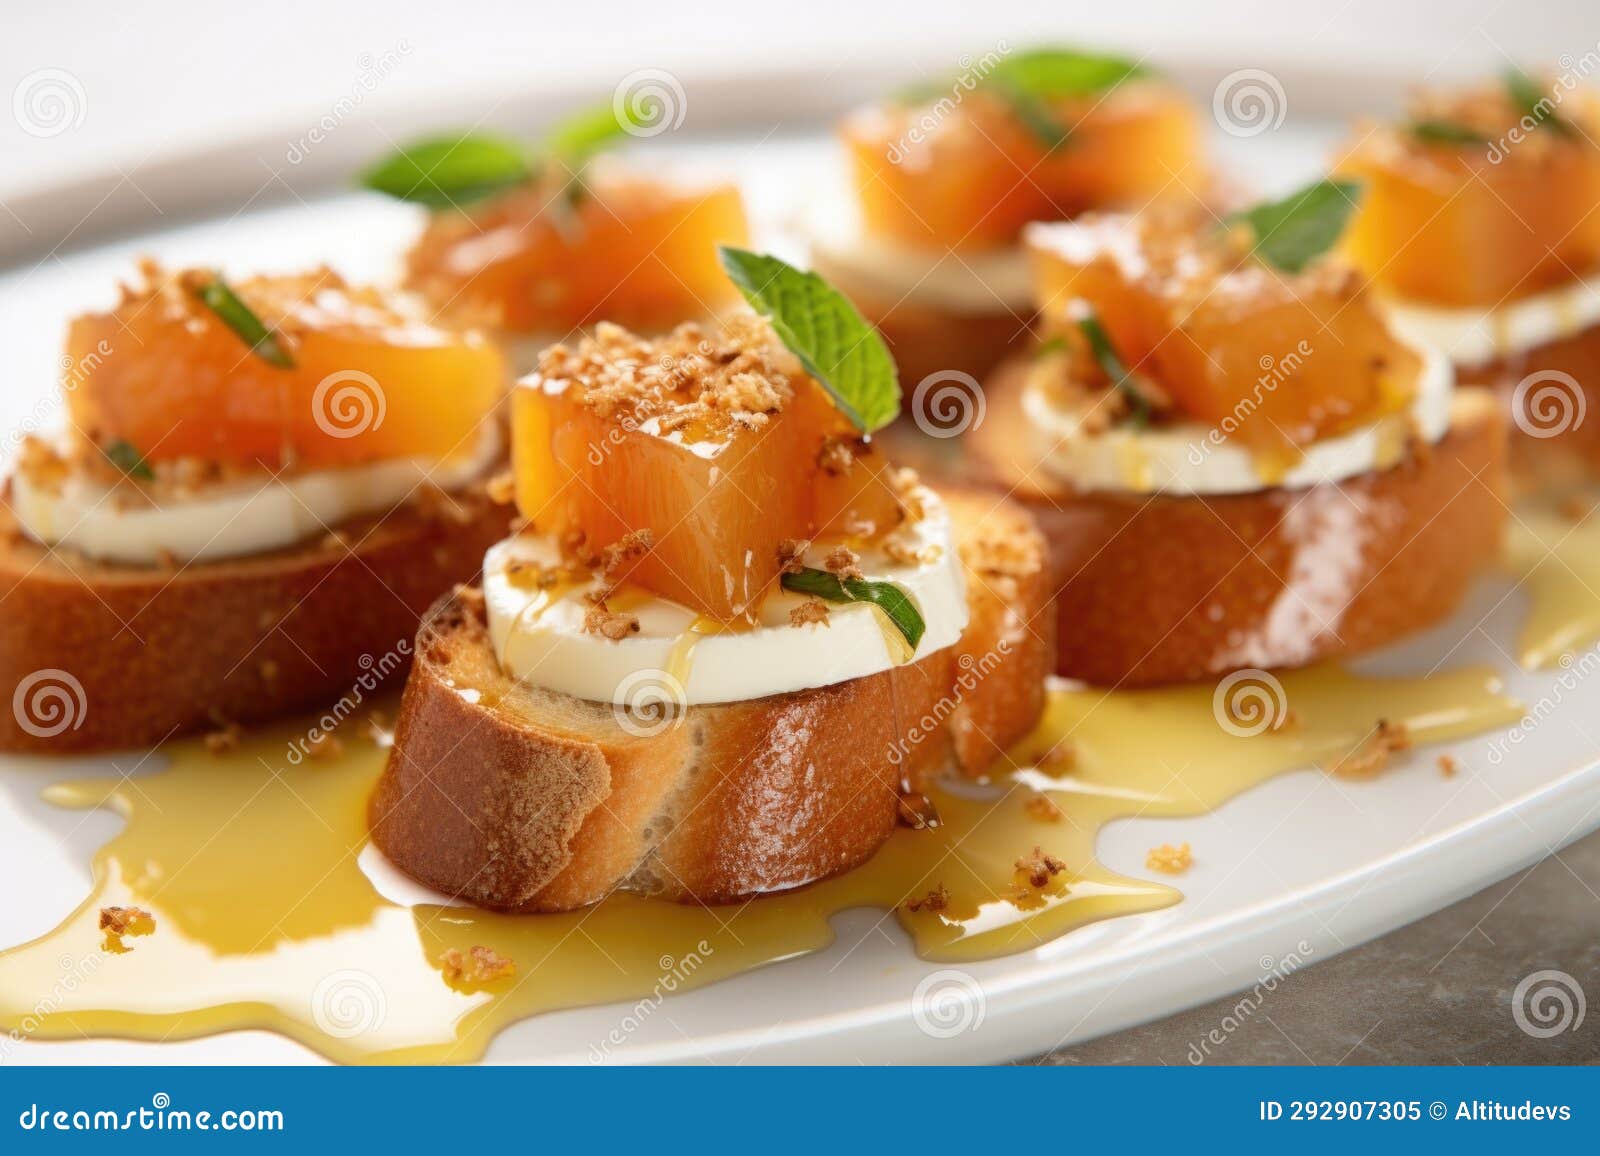 close up: honey-coated bruschetta on porcelain dish